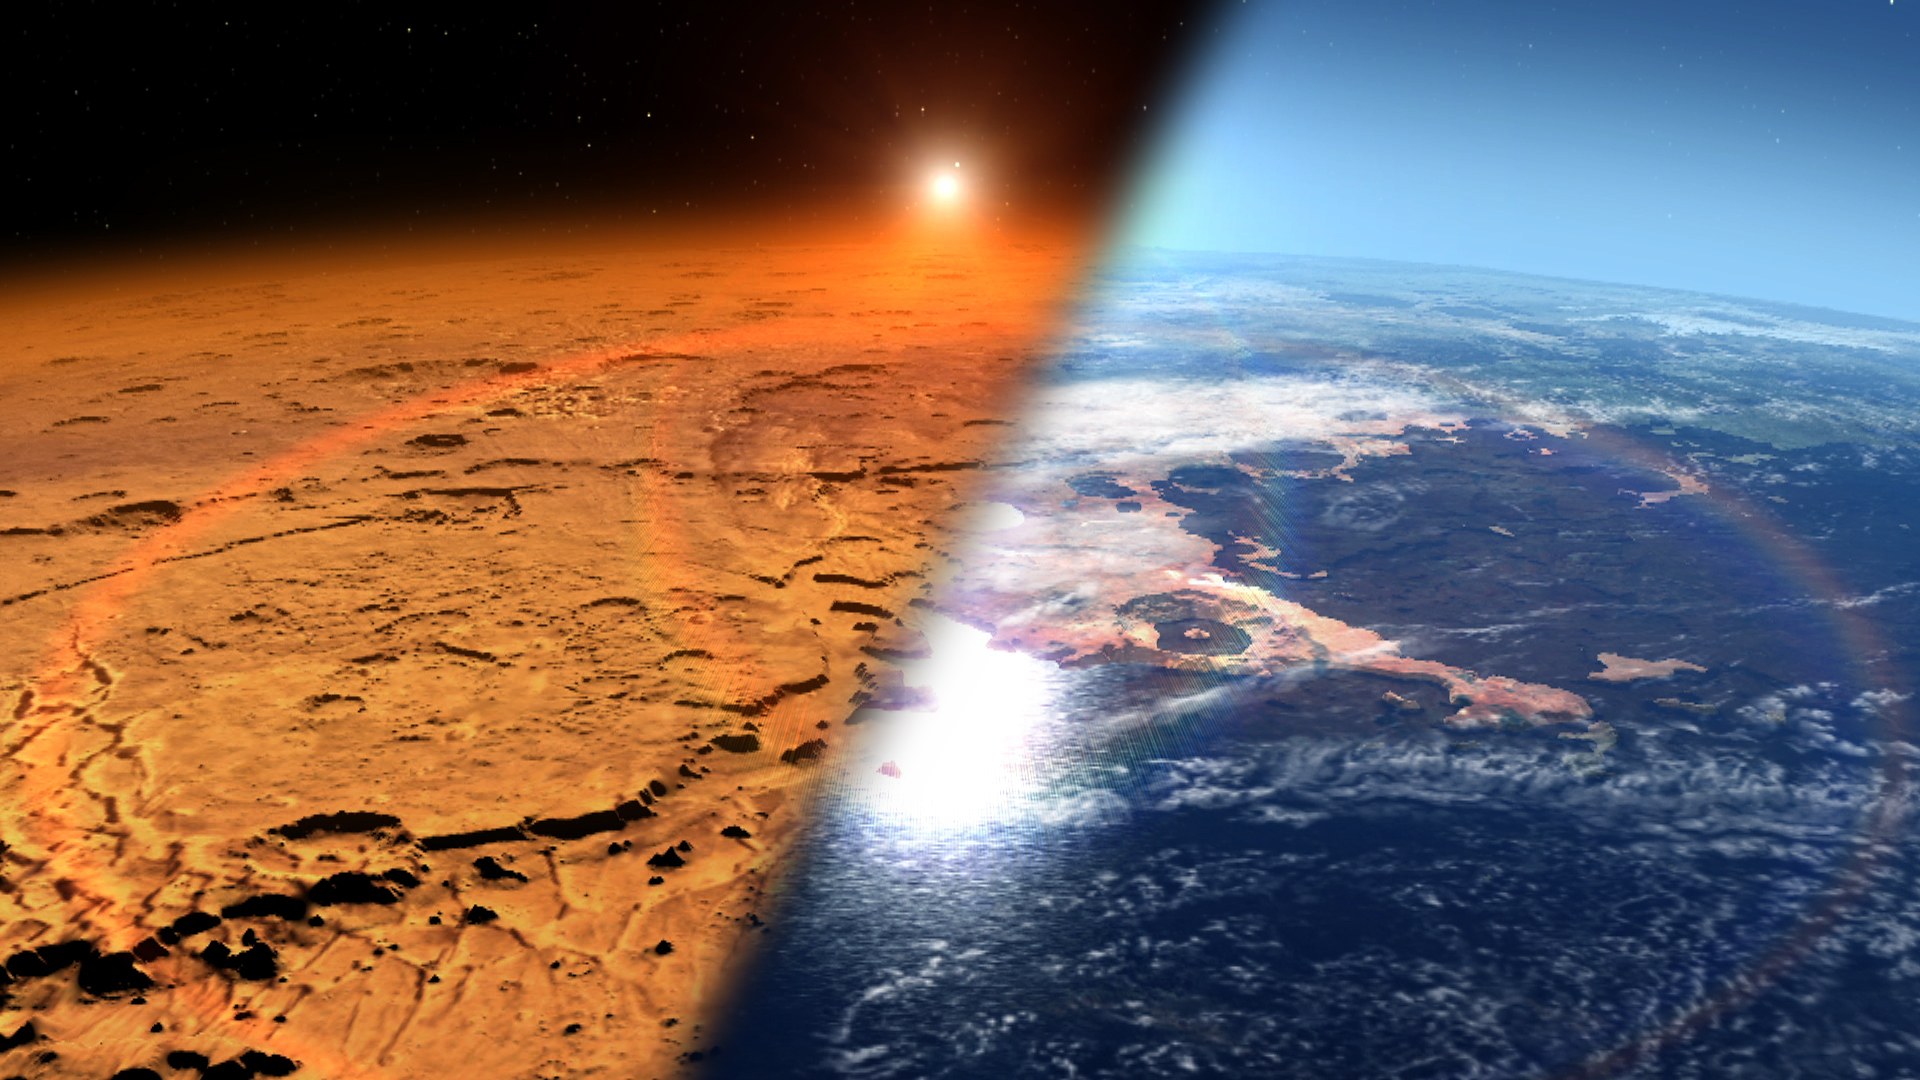 НАСА предлагает восстановить атмосферу Марса при помощи магнитного щита - 1